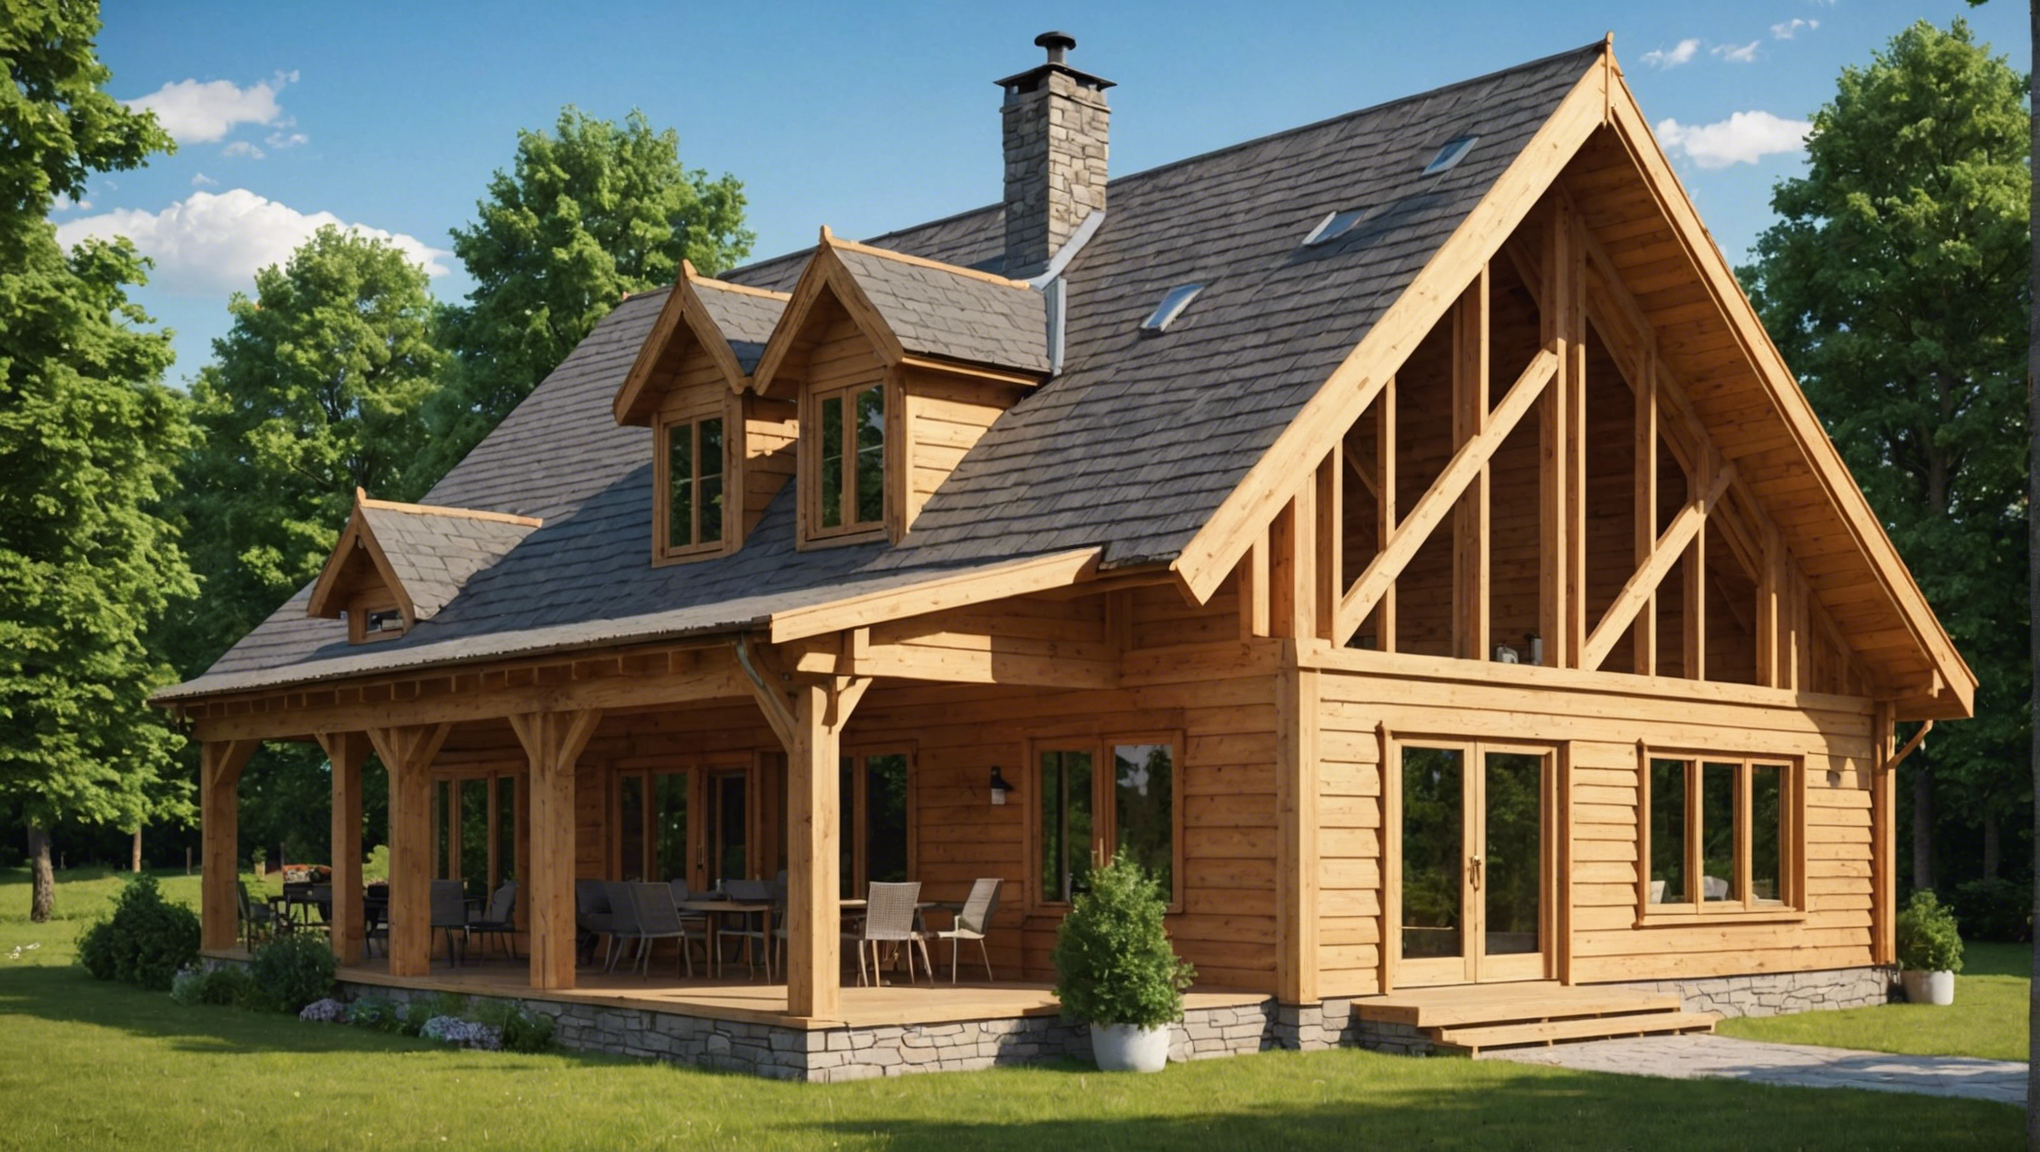 découvrez les avantages de choisir une maison en bois pour votre construction : écologique, durable et esthétique. optez pour l'authenticité et le confort d'une maison en bois.